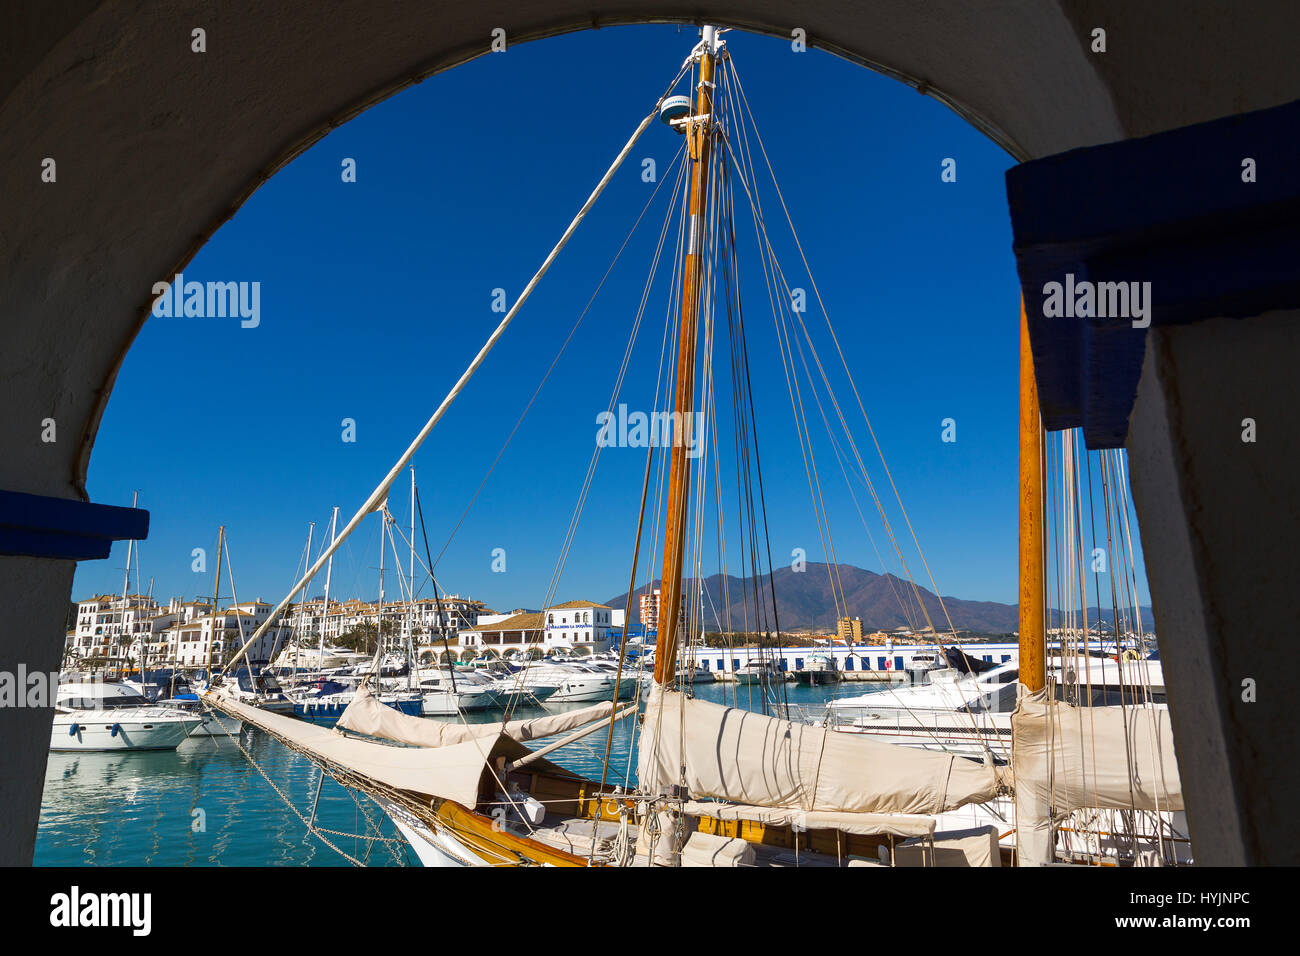 Marina. Puerto Deportivo La Duquesa, Manilva. Malaga province Costa del Sol. Andalusia Southern Spain, Europe Stock Photo